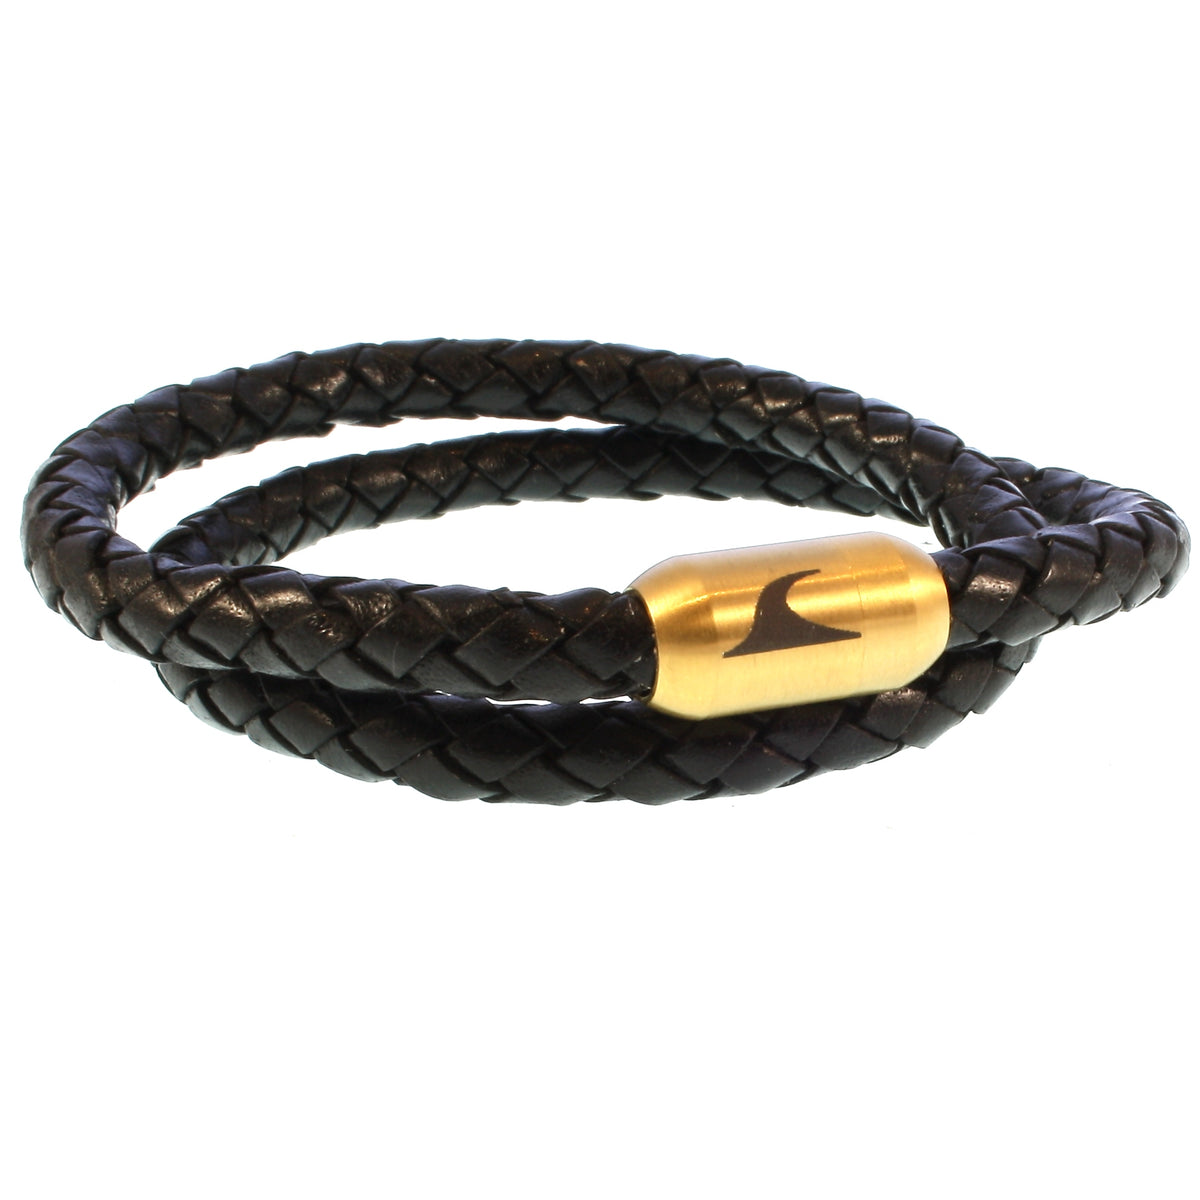 Herren-Leder-Armband-hawaii-schwarz-gold-geflochten-Edelstahlverschluss-vorn-wavepirate-shop-f